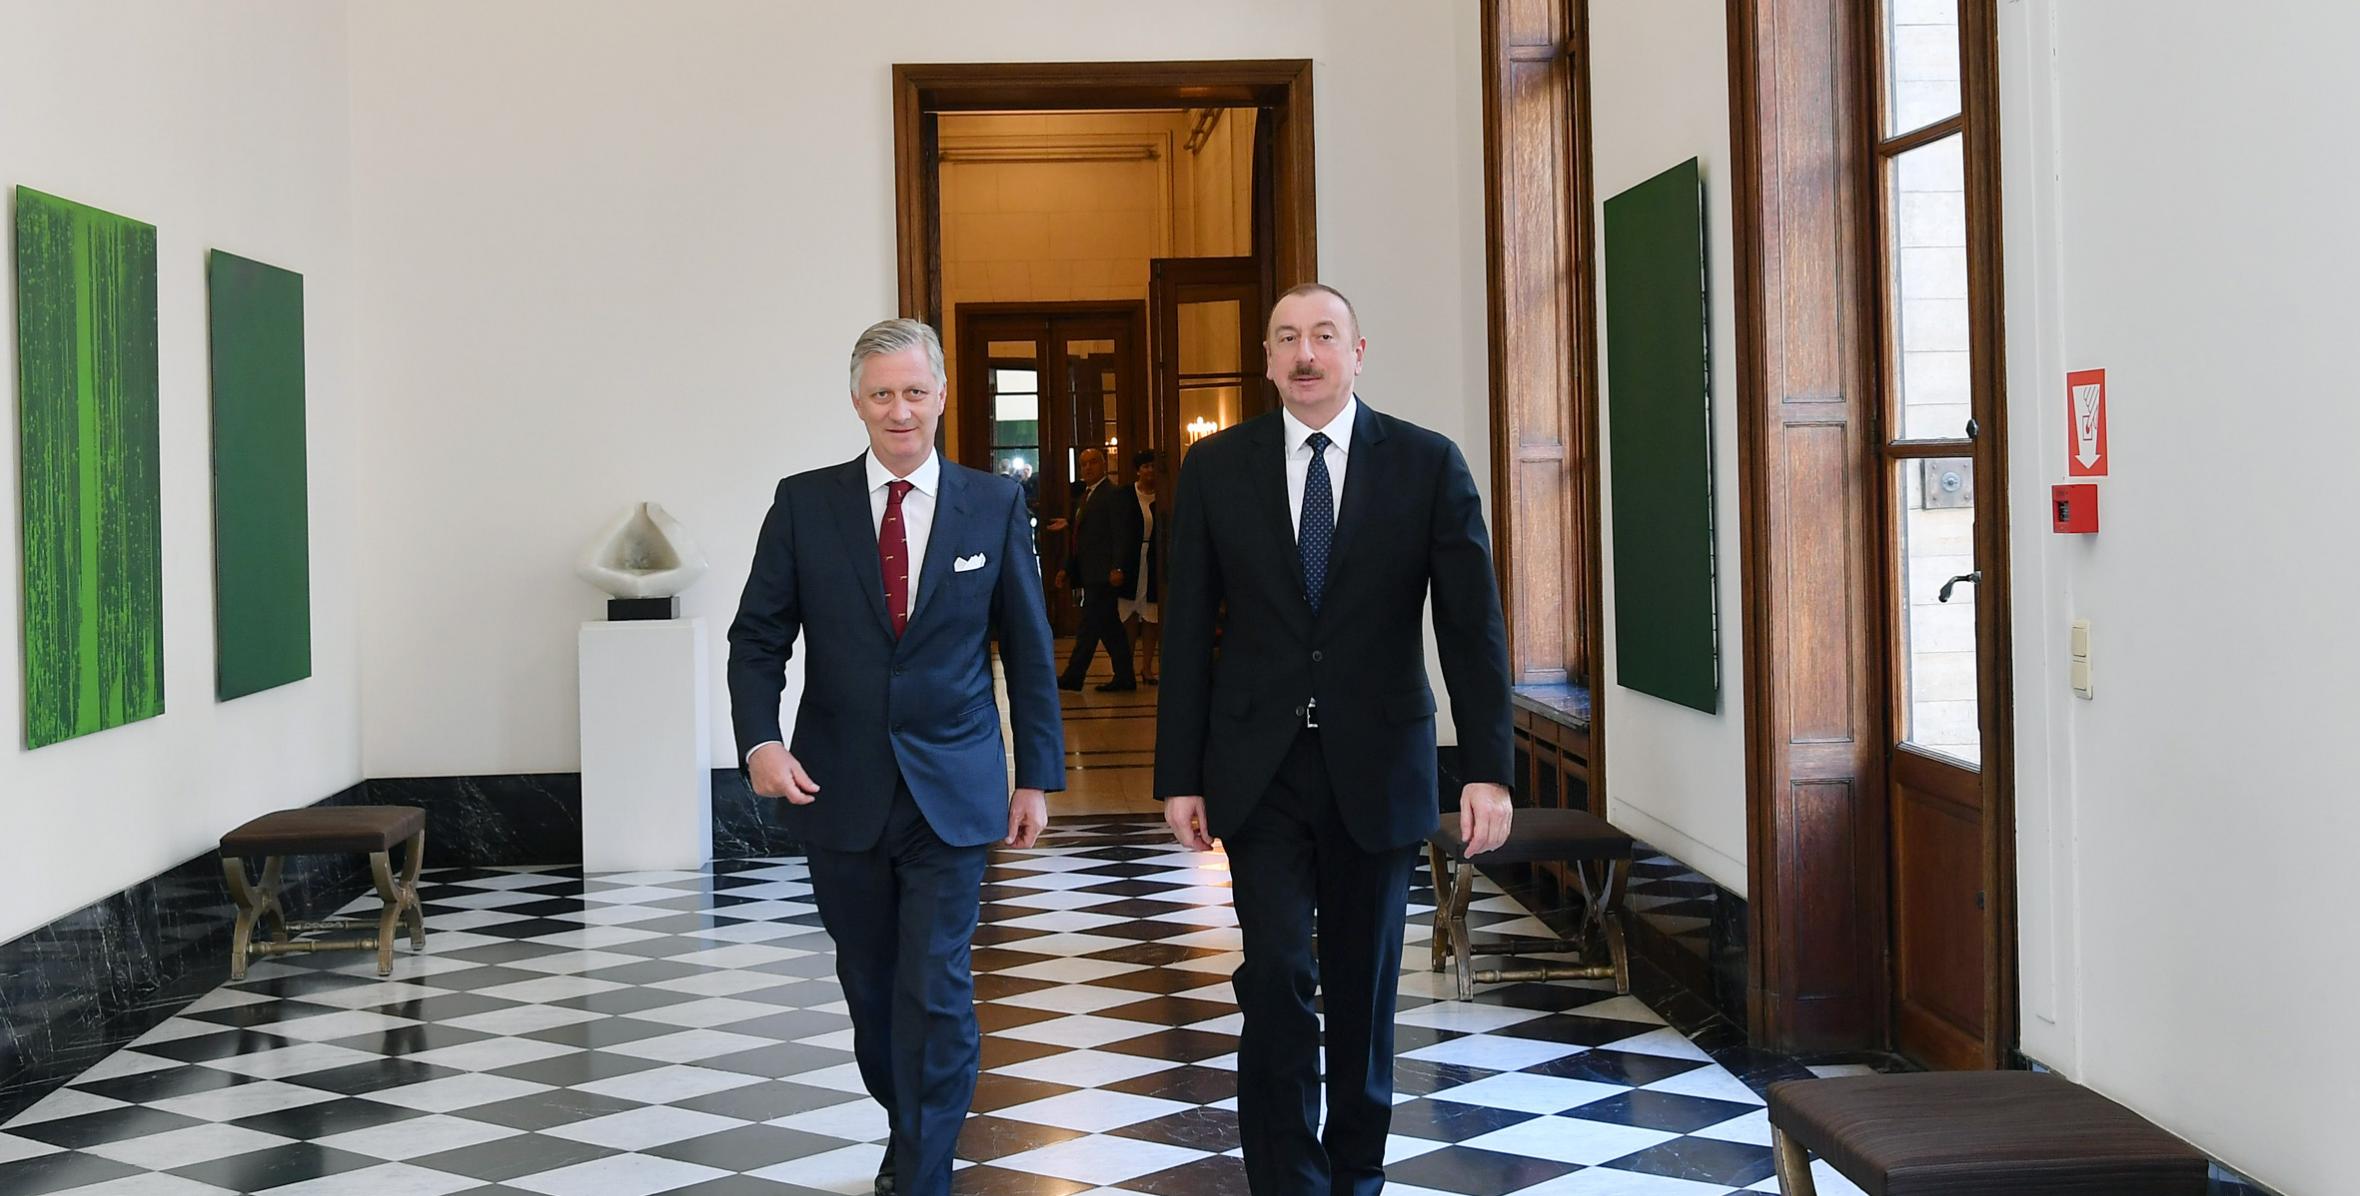 Ilham Aliyev met with King Philippe of Belgium in Brussels